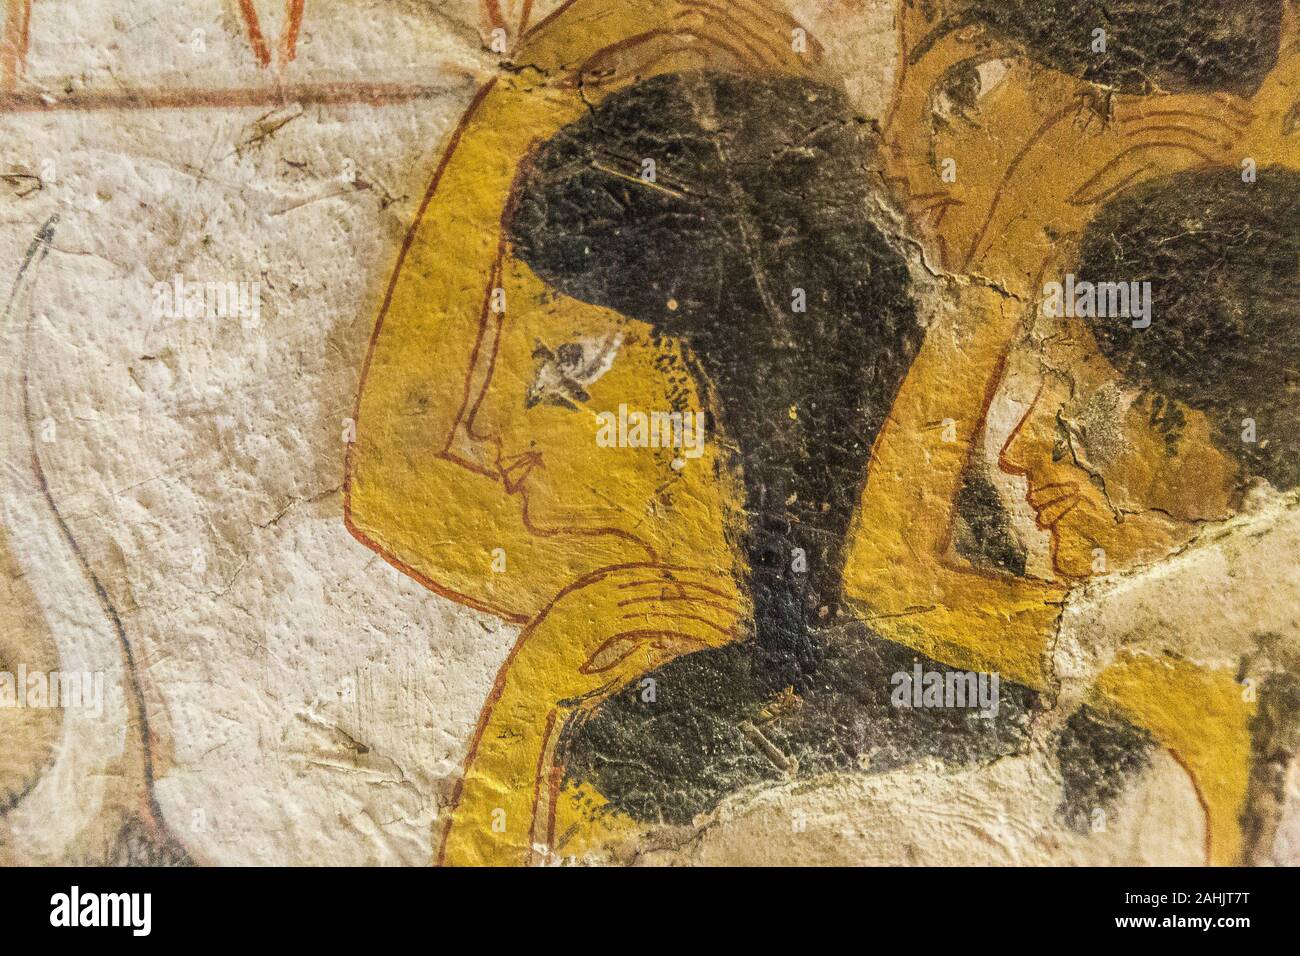 UNESCO World Heritage, Thèbes en Egypte, la vallée des Nobles, tombe de Userhat (TT 51) : Détail fo une scène, des femmes en deuil. Banque D'Images